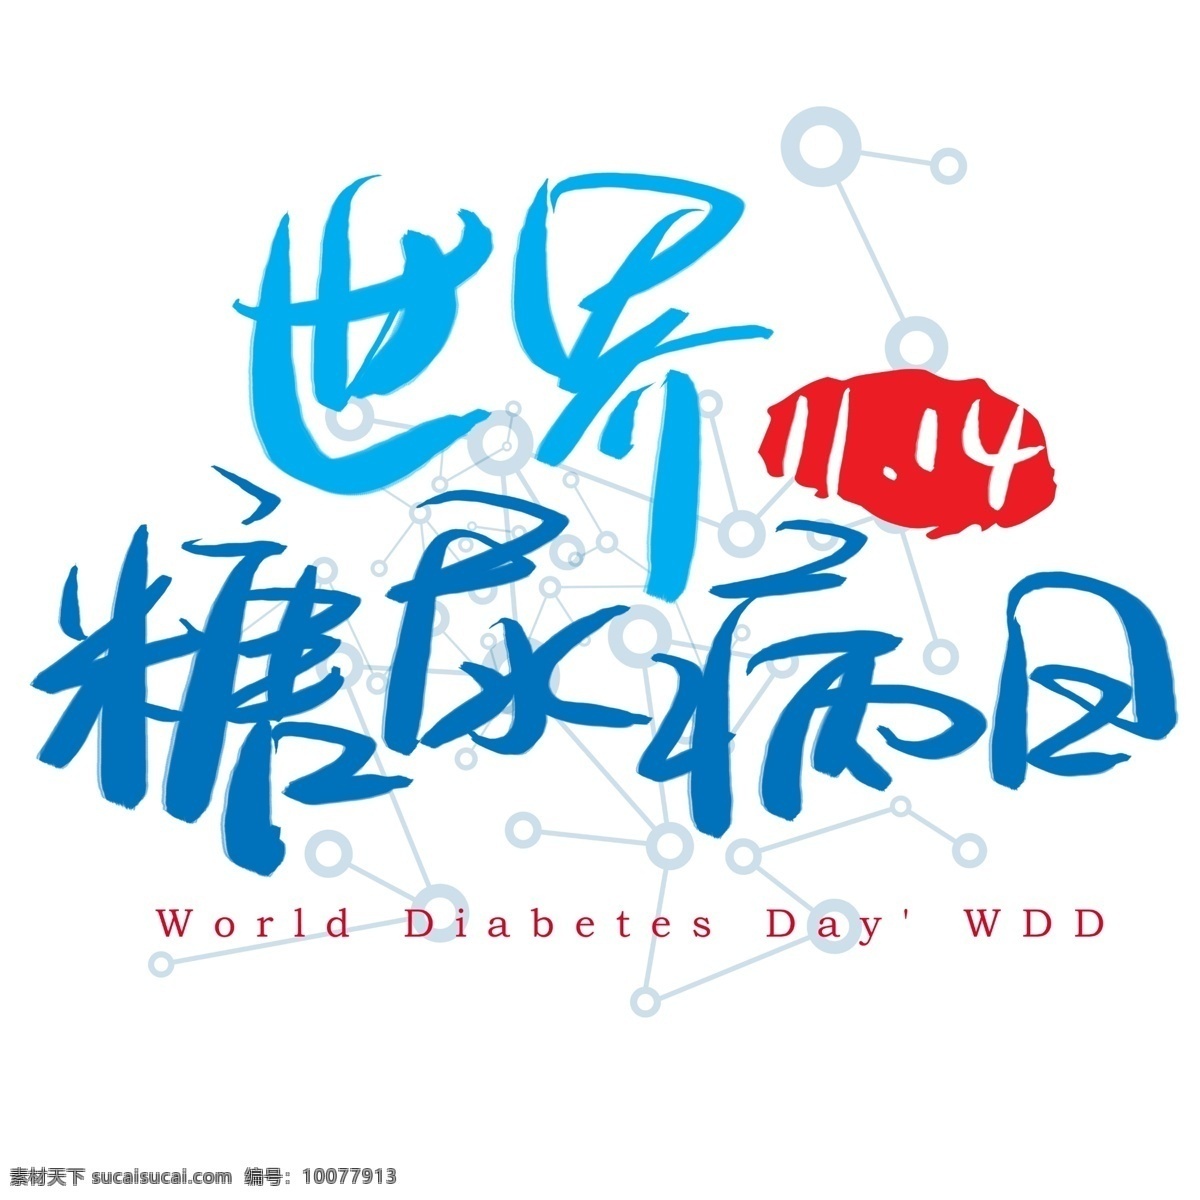 世界 糖尿病 日 手写 手绘 书法艺术 字 世界糖尿病日 world diabetes day wdd 尿糖